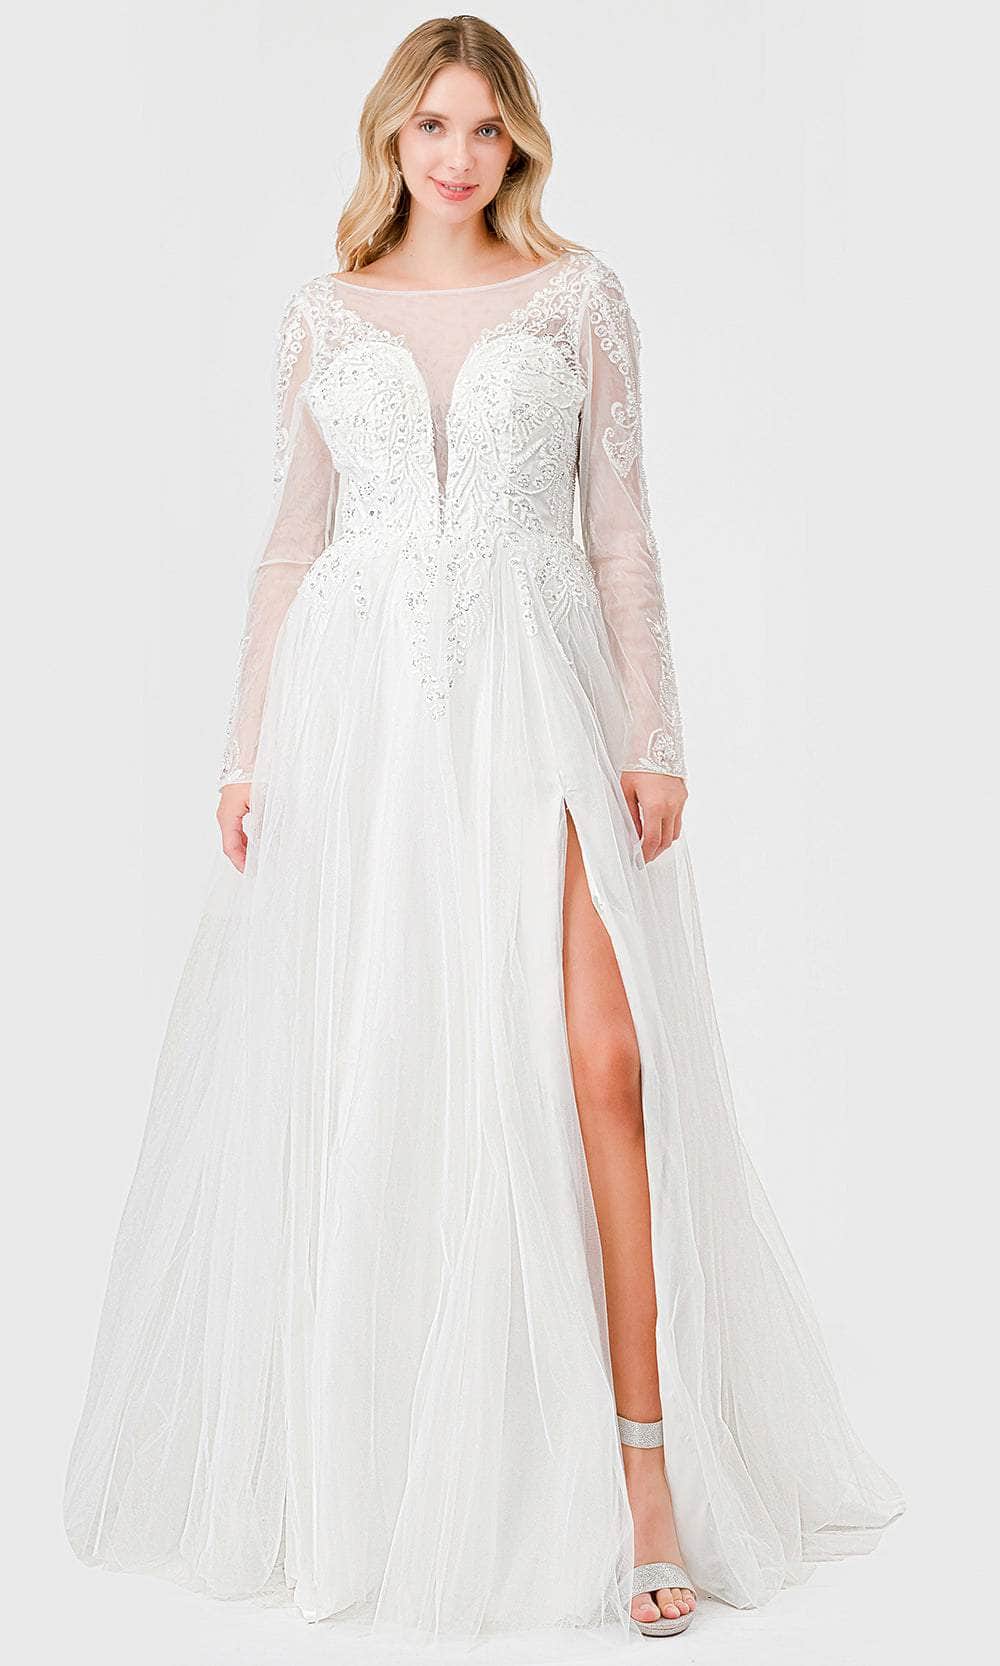 Image of Aspeed Design MS0033 - Illusion Bateau Embellished Bridal Dress